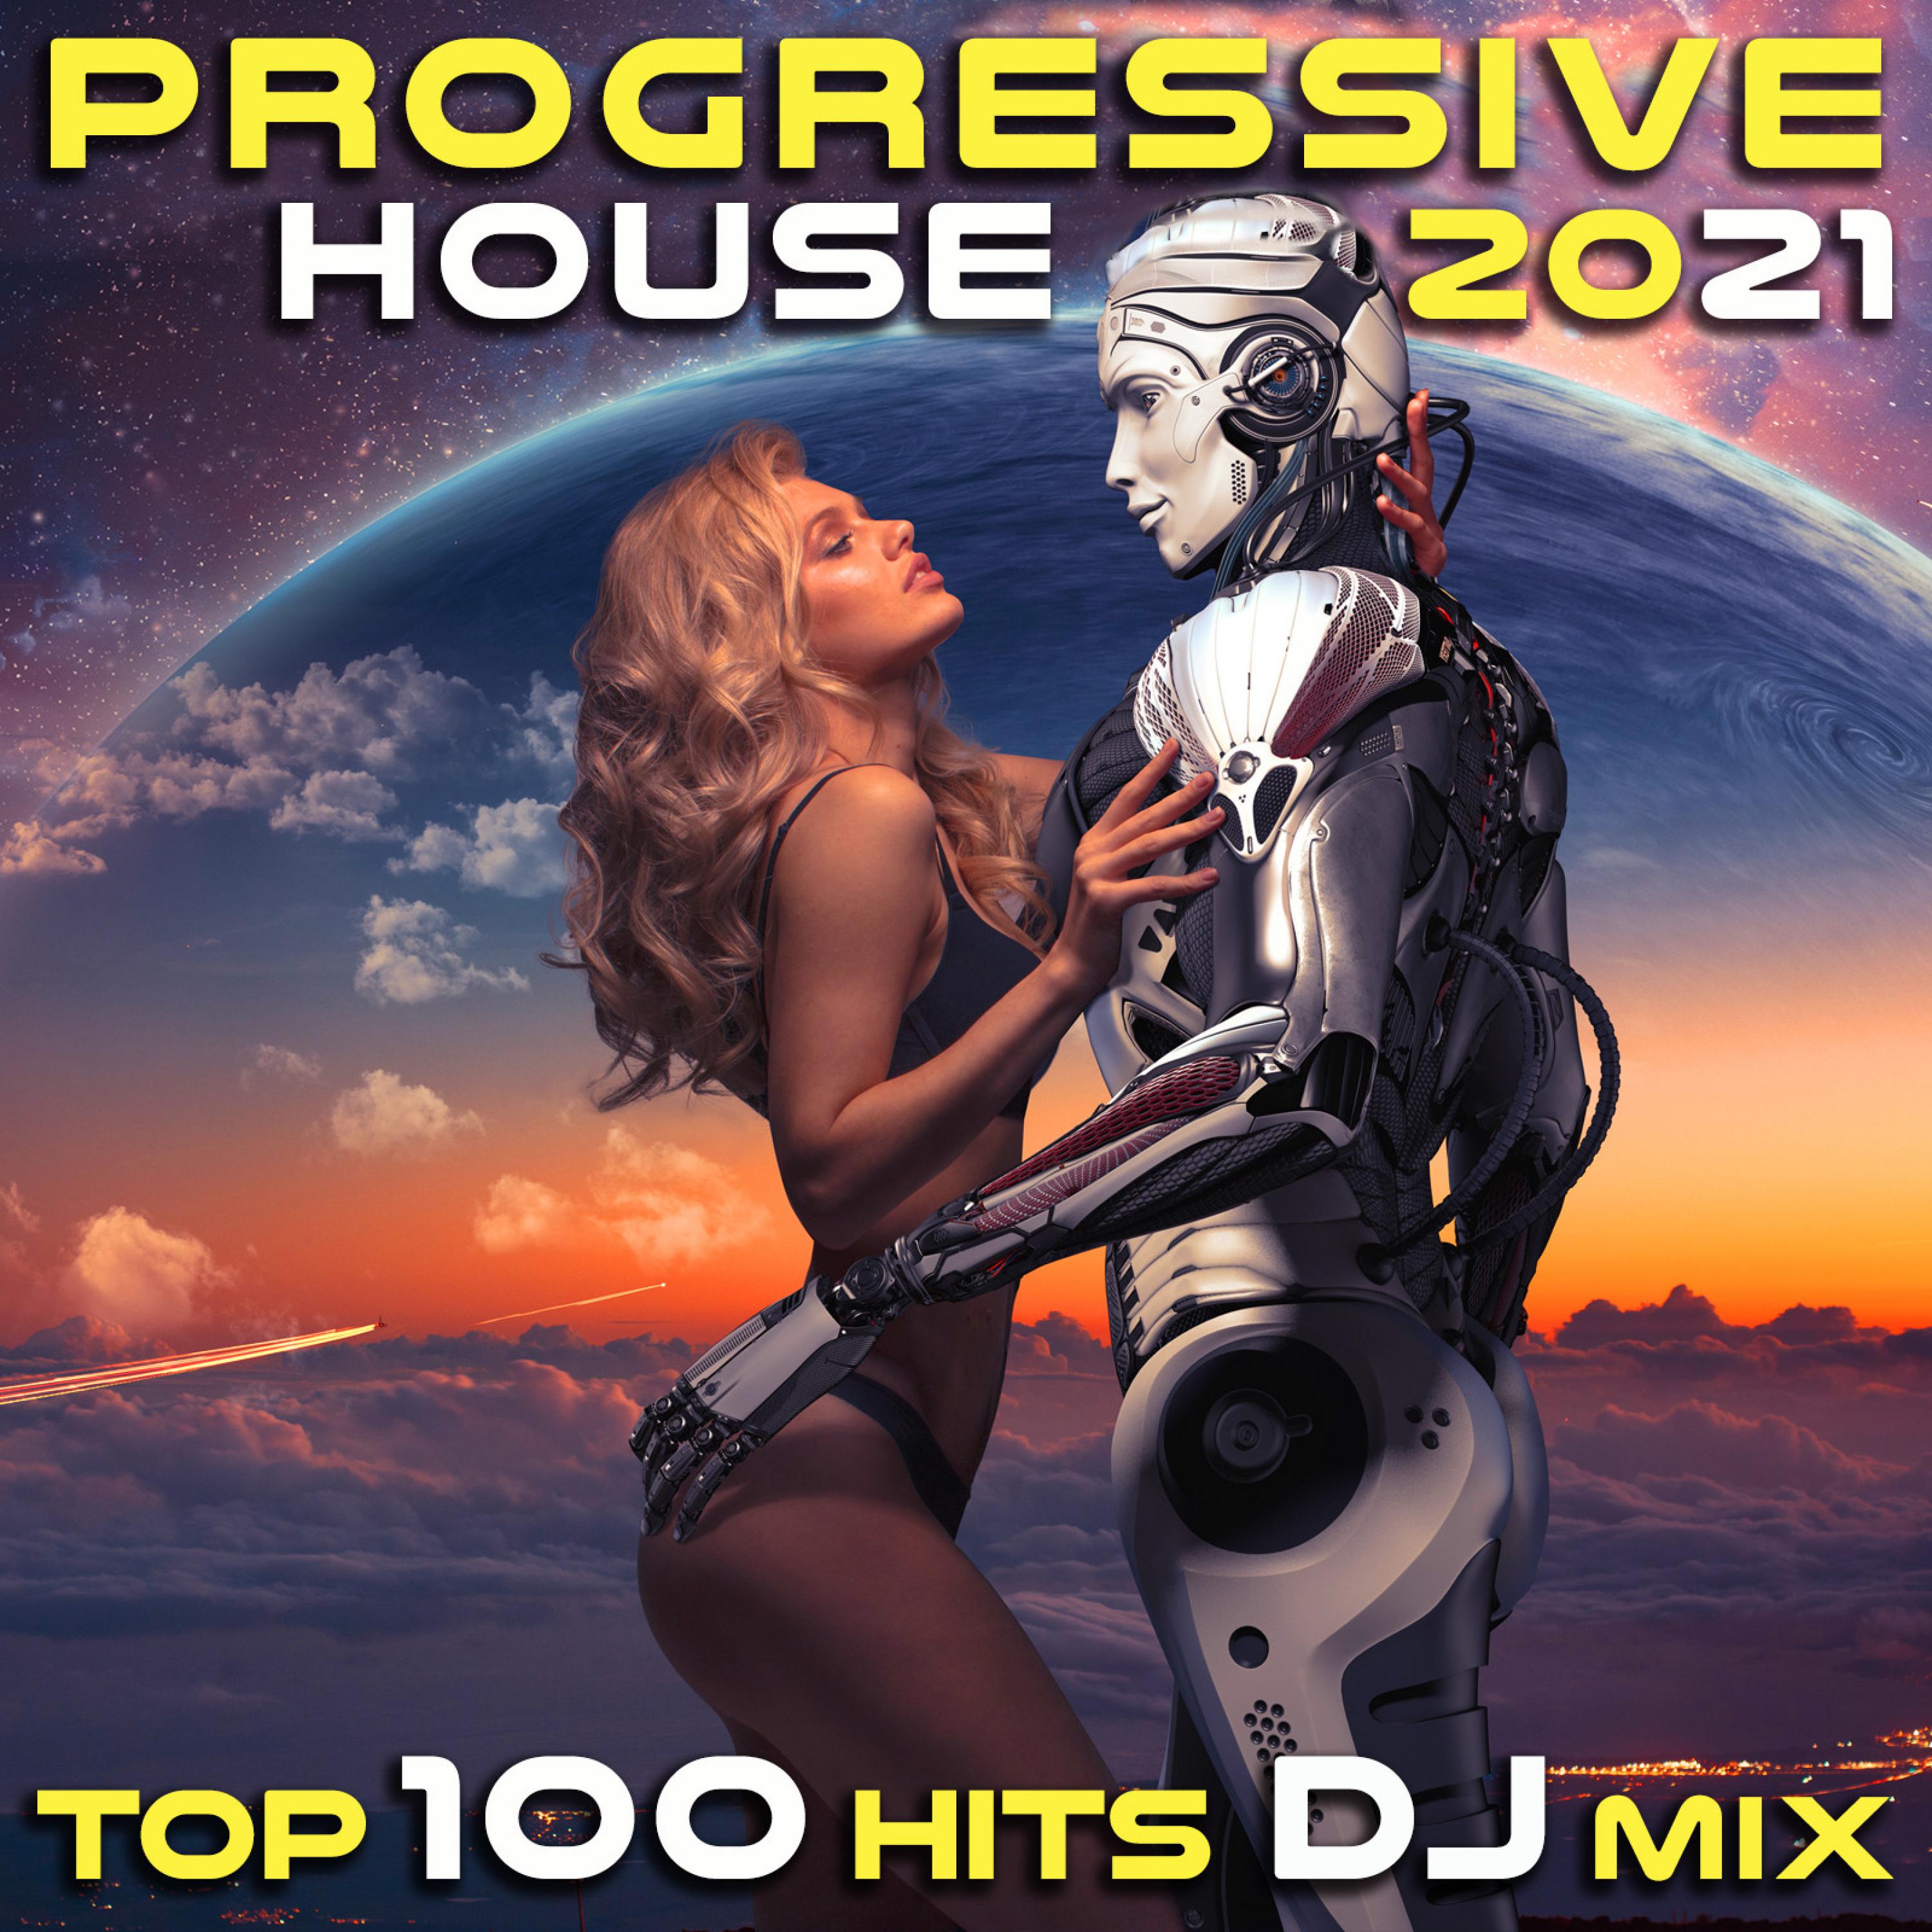 Ali Taimot - Underwater I (Progressive House 2021 Top 100 Hits DJ Mixed)